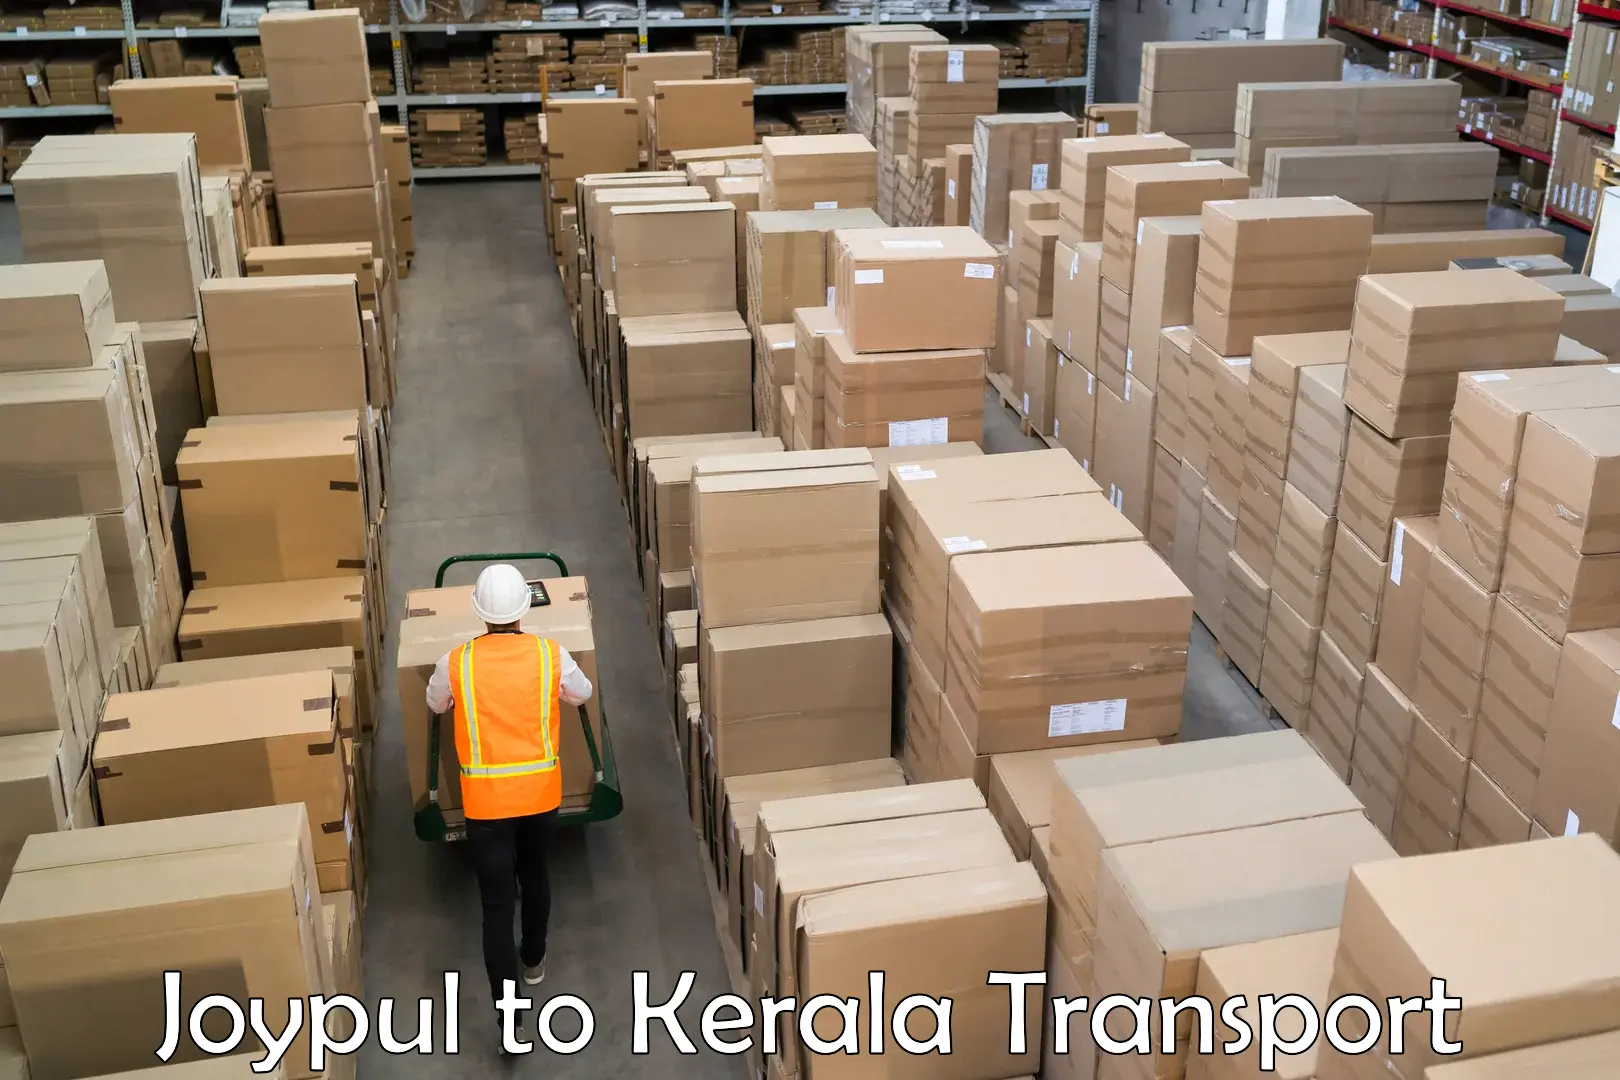 Nearby transport service Joypul to Parippally